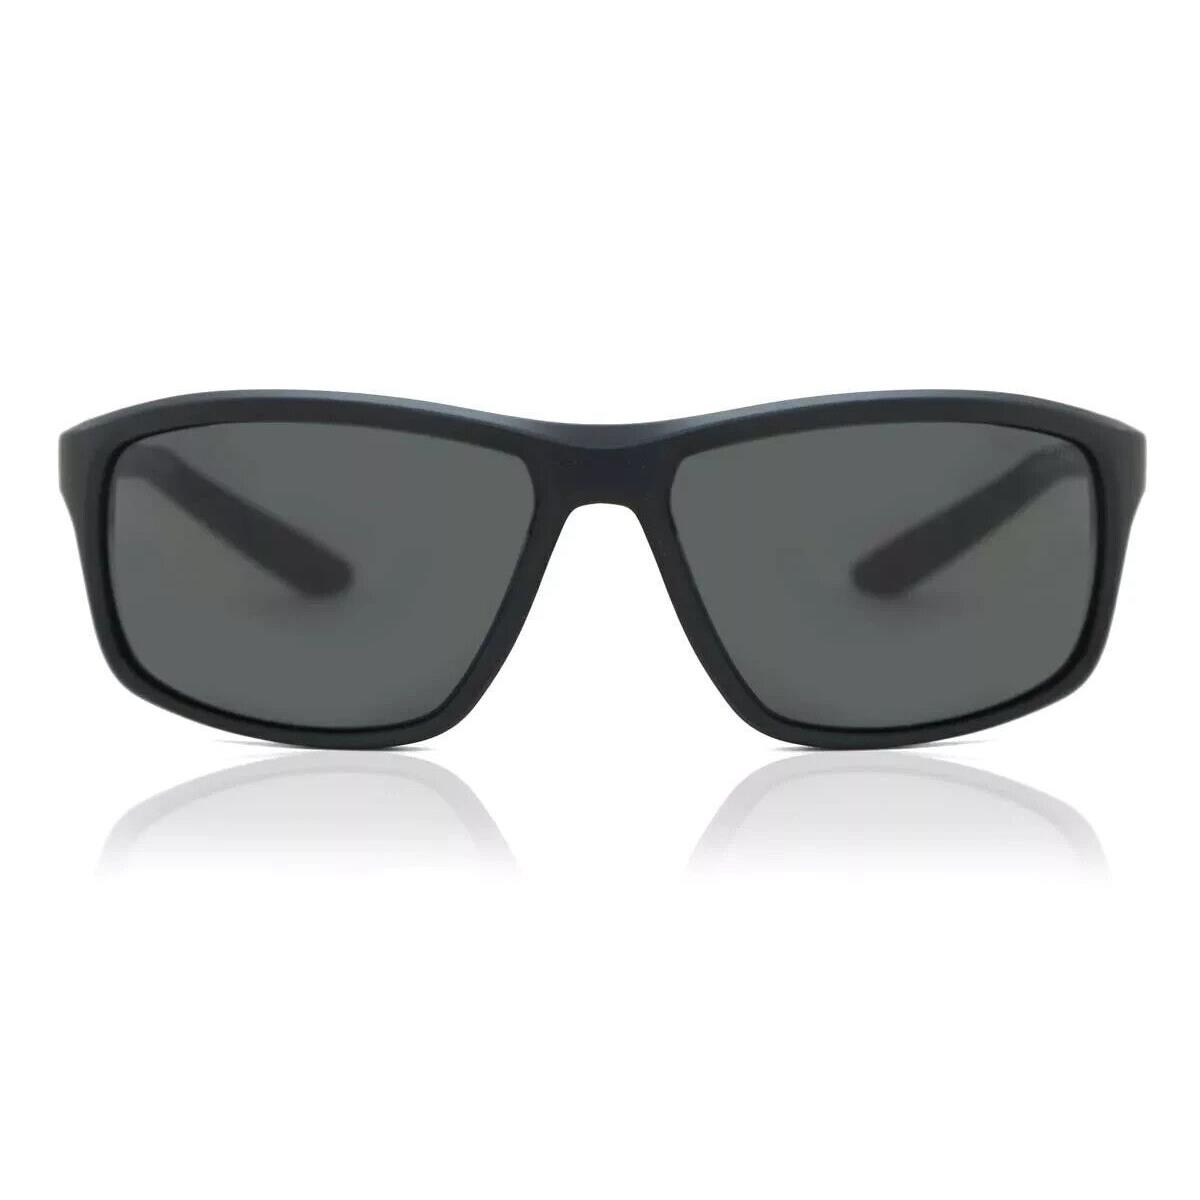 Nike ADRENALINE-22-DV2372-010-6415 Matte Black Sunglasses - Frame: MATTE BLACK, Lens: DARK GREY